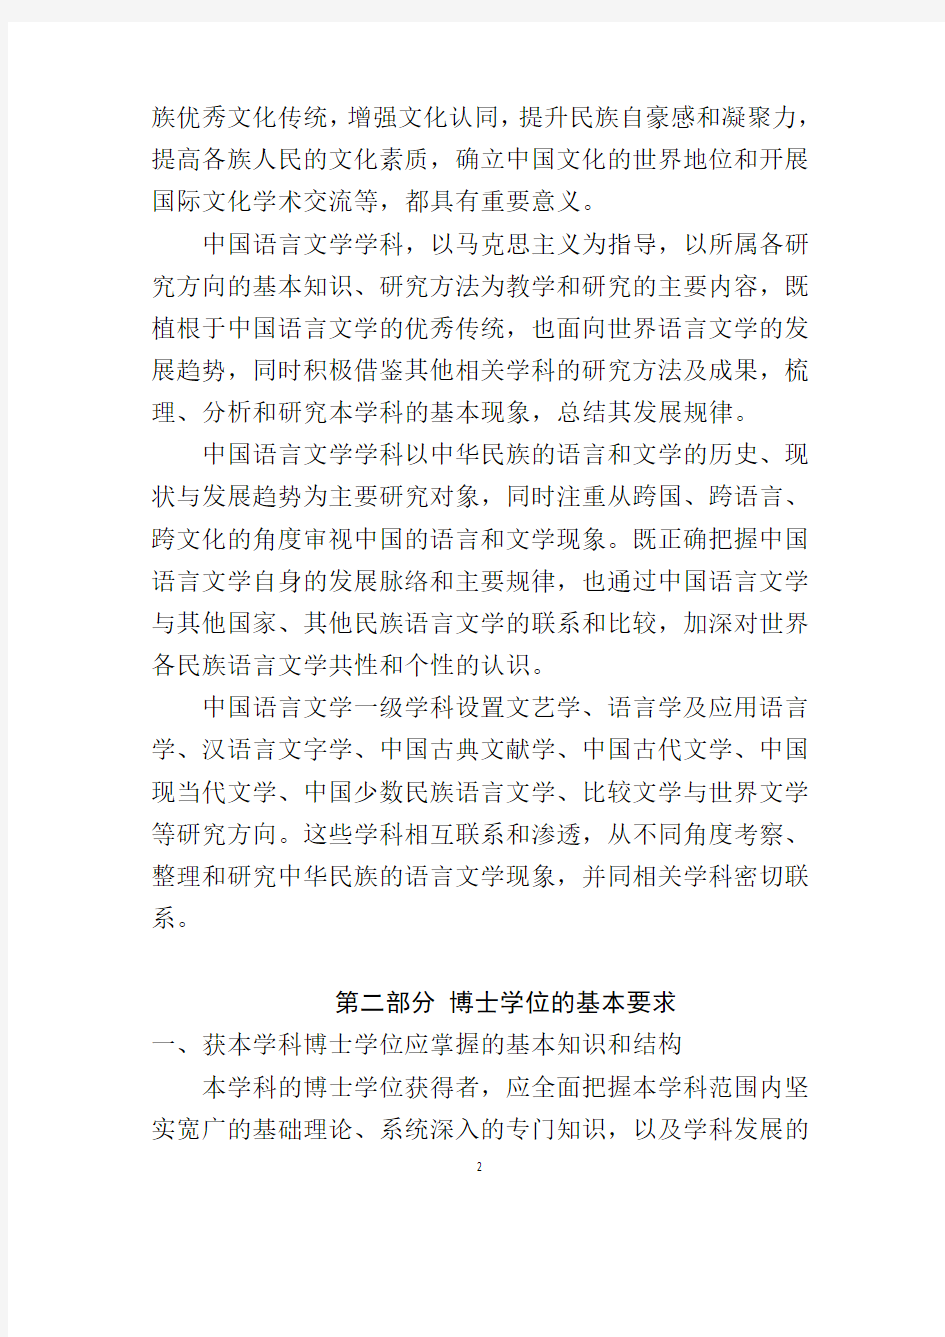 授予博士和硕士学位的基本要求-上海大学文学与创意写作研究中心